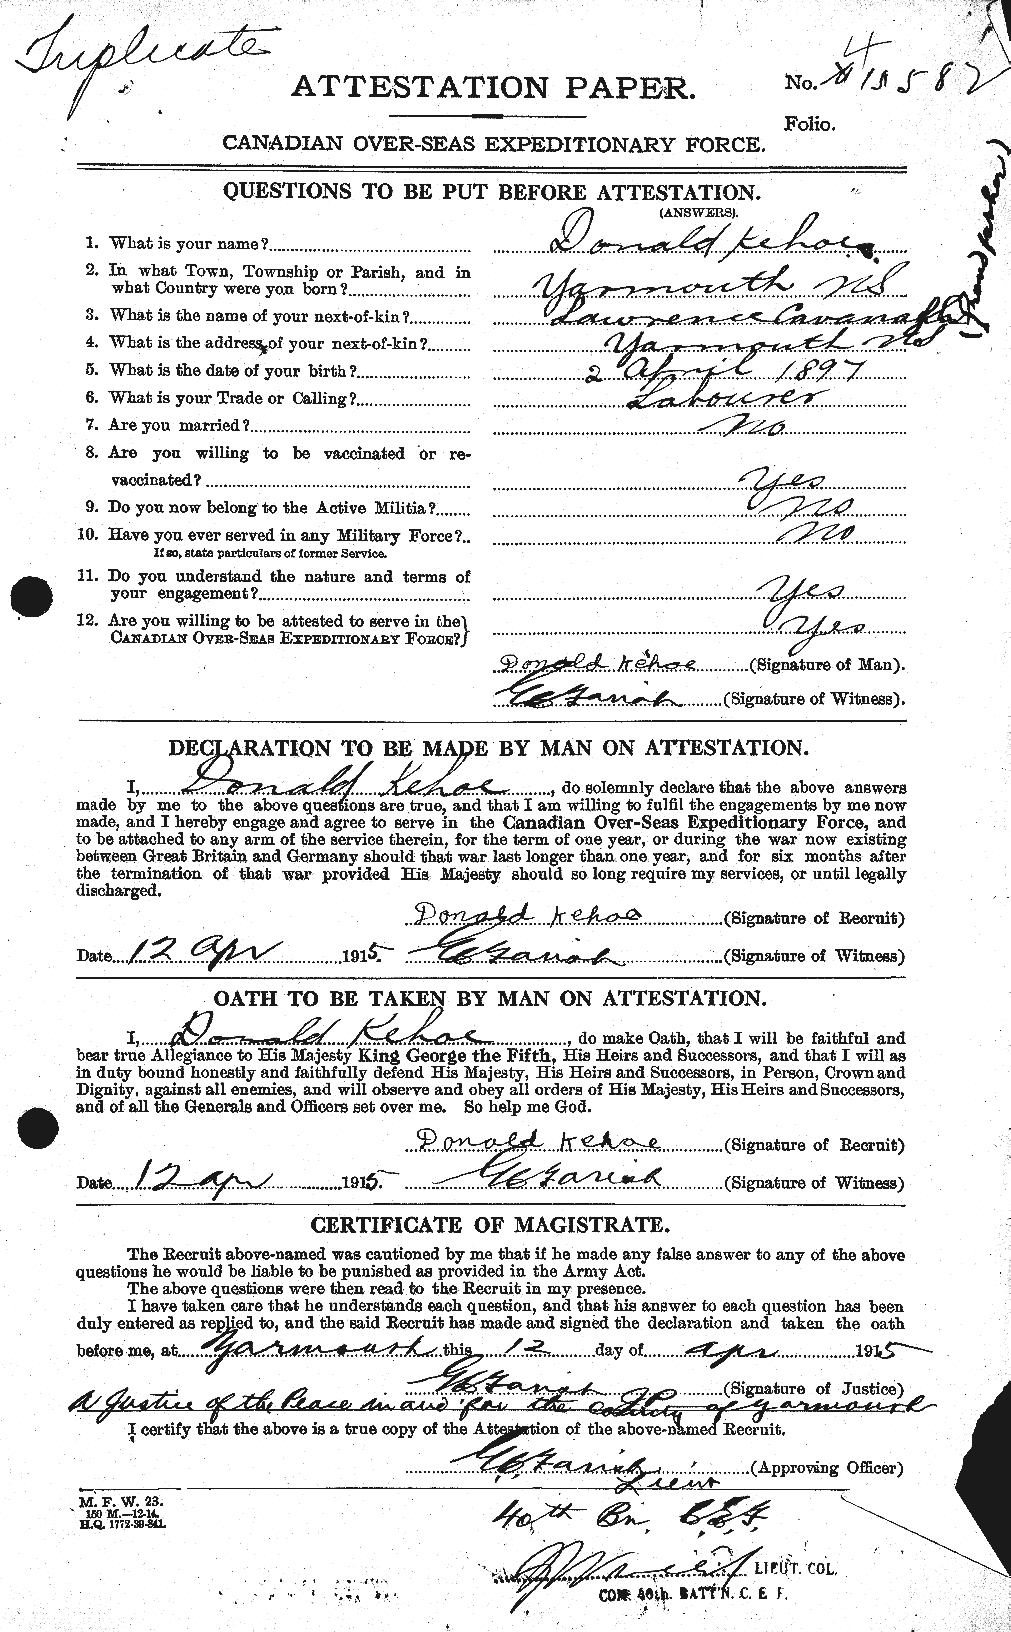 Dossiers du Personnel de la Première Guerre mondiale - CEC 430367a